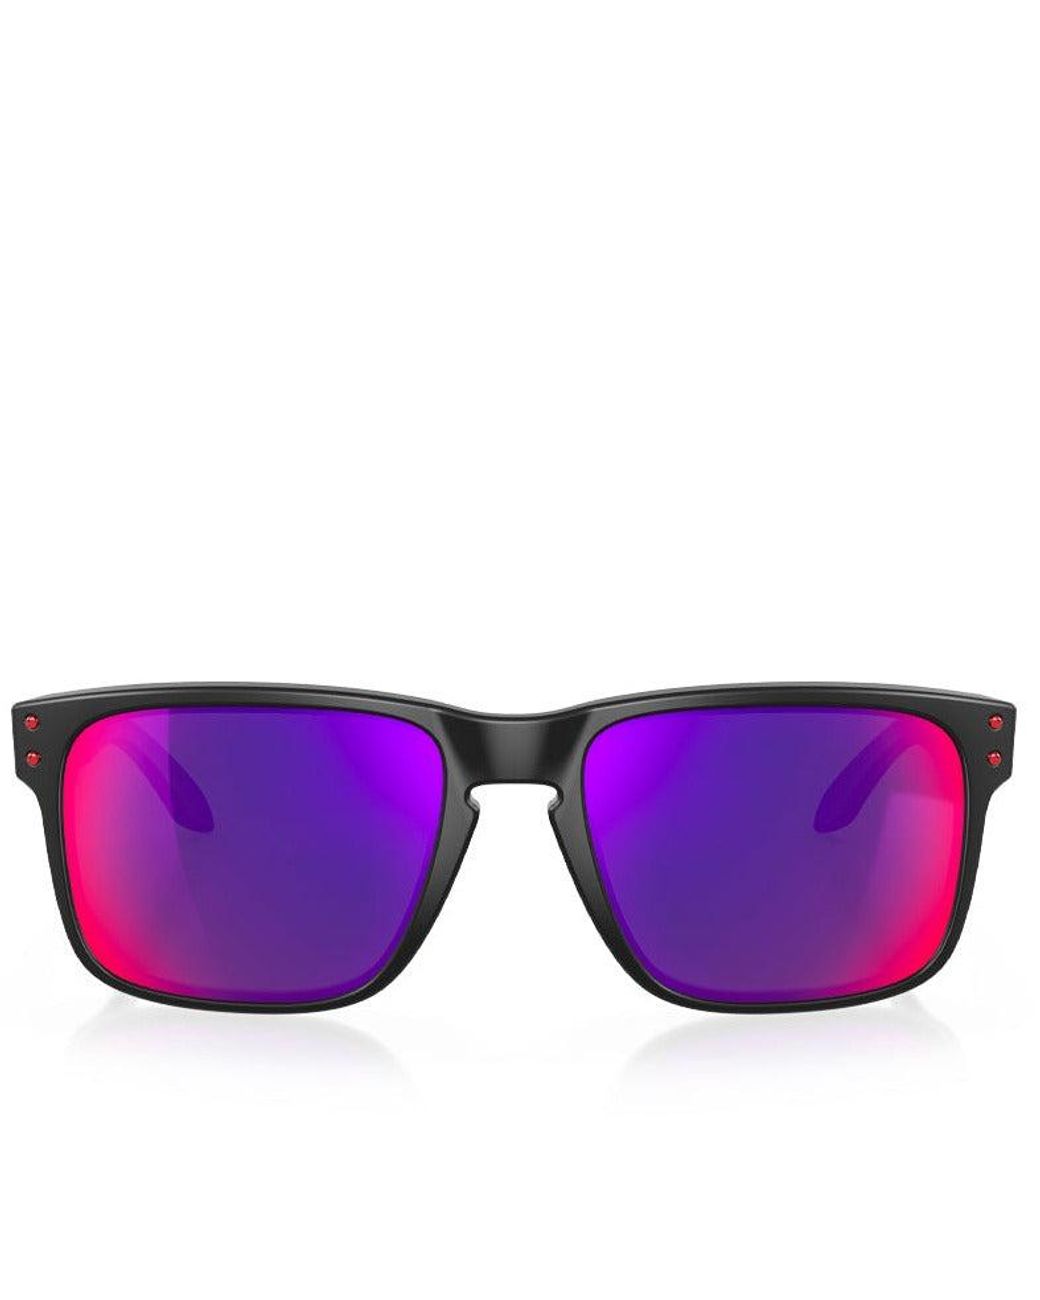 Smartvlt Replacement Lenses Polarized For Oakley Antix Sunglasses - Orange  Red - Eyeglasses Lenses - AliExpress